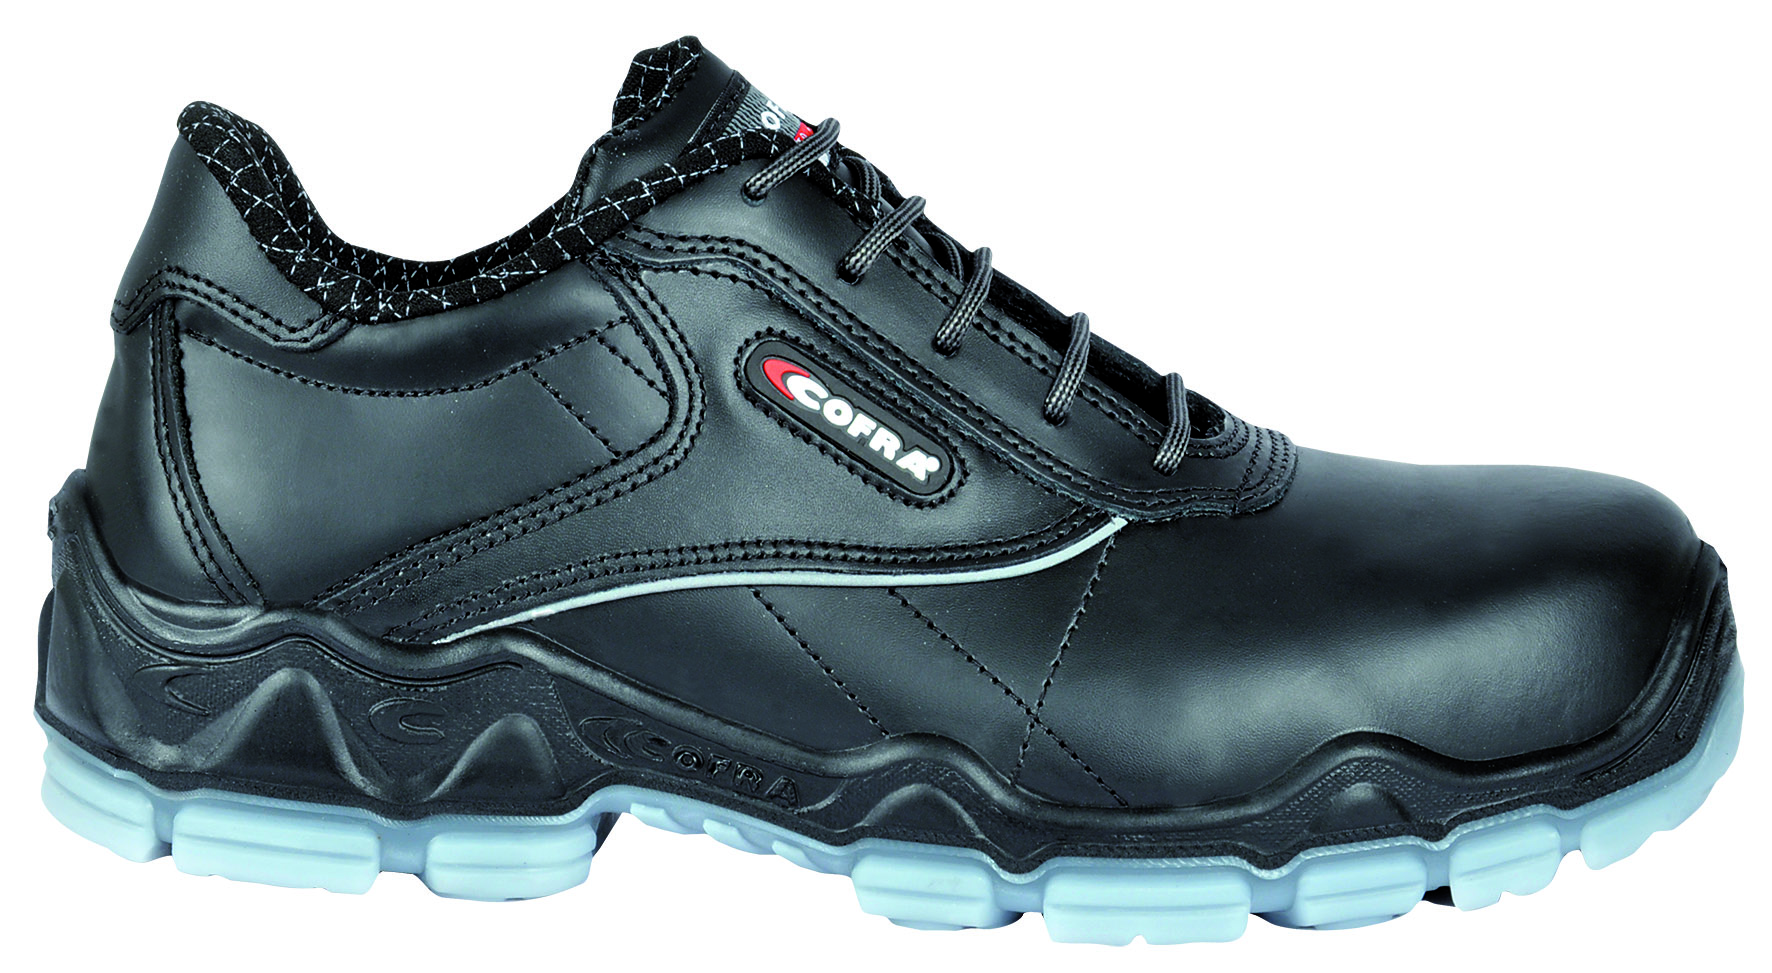 COFRA-Footwear, MONET S3 SRC, Sicherheits-Arbeits-Berufs-Schuhe, Halbschuhe, schwarz